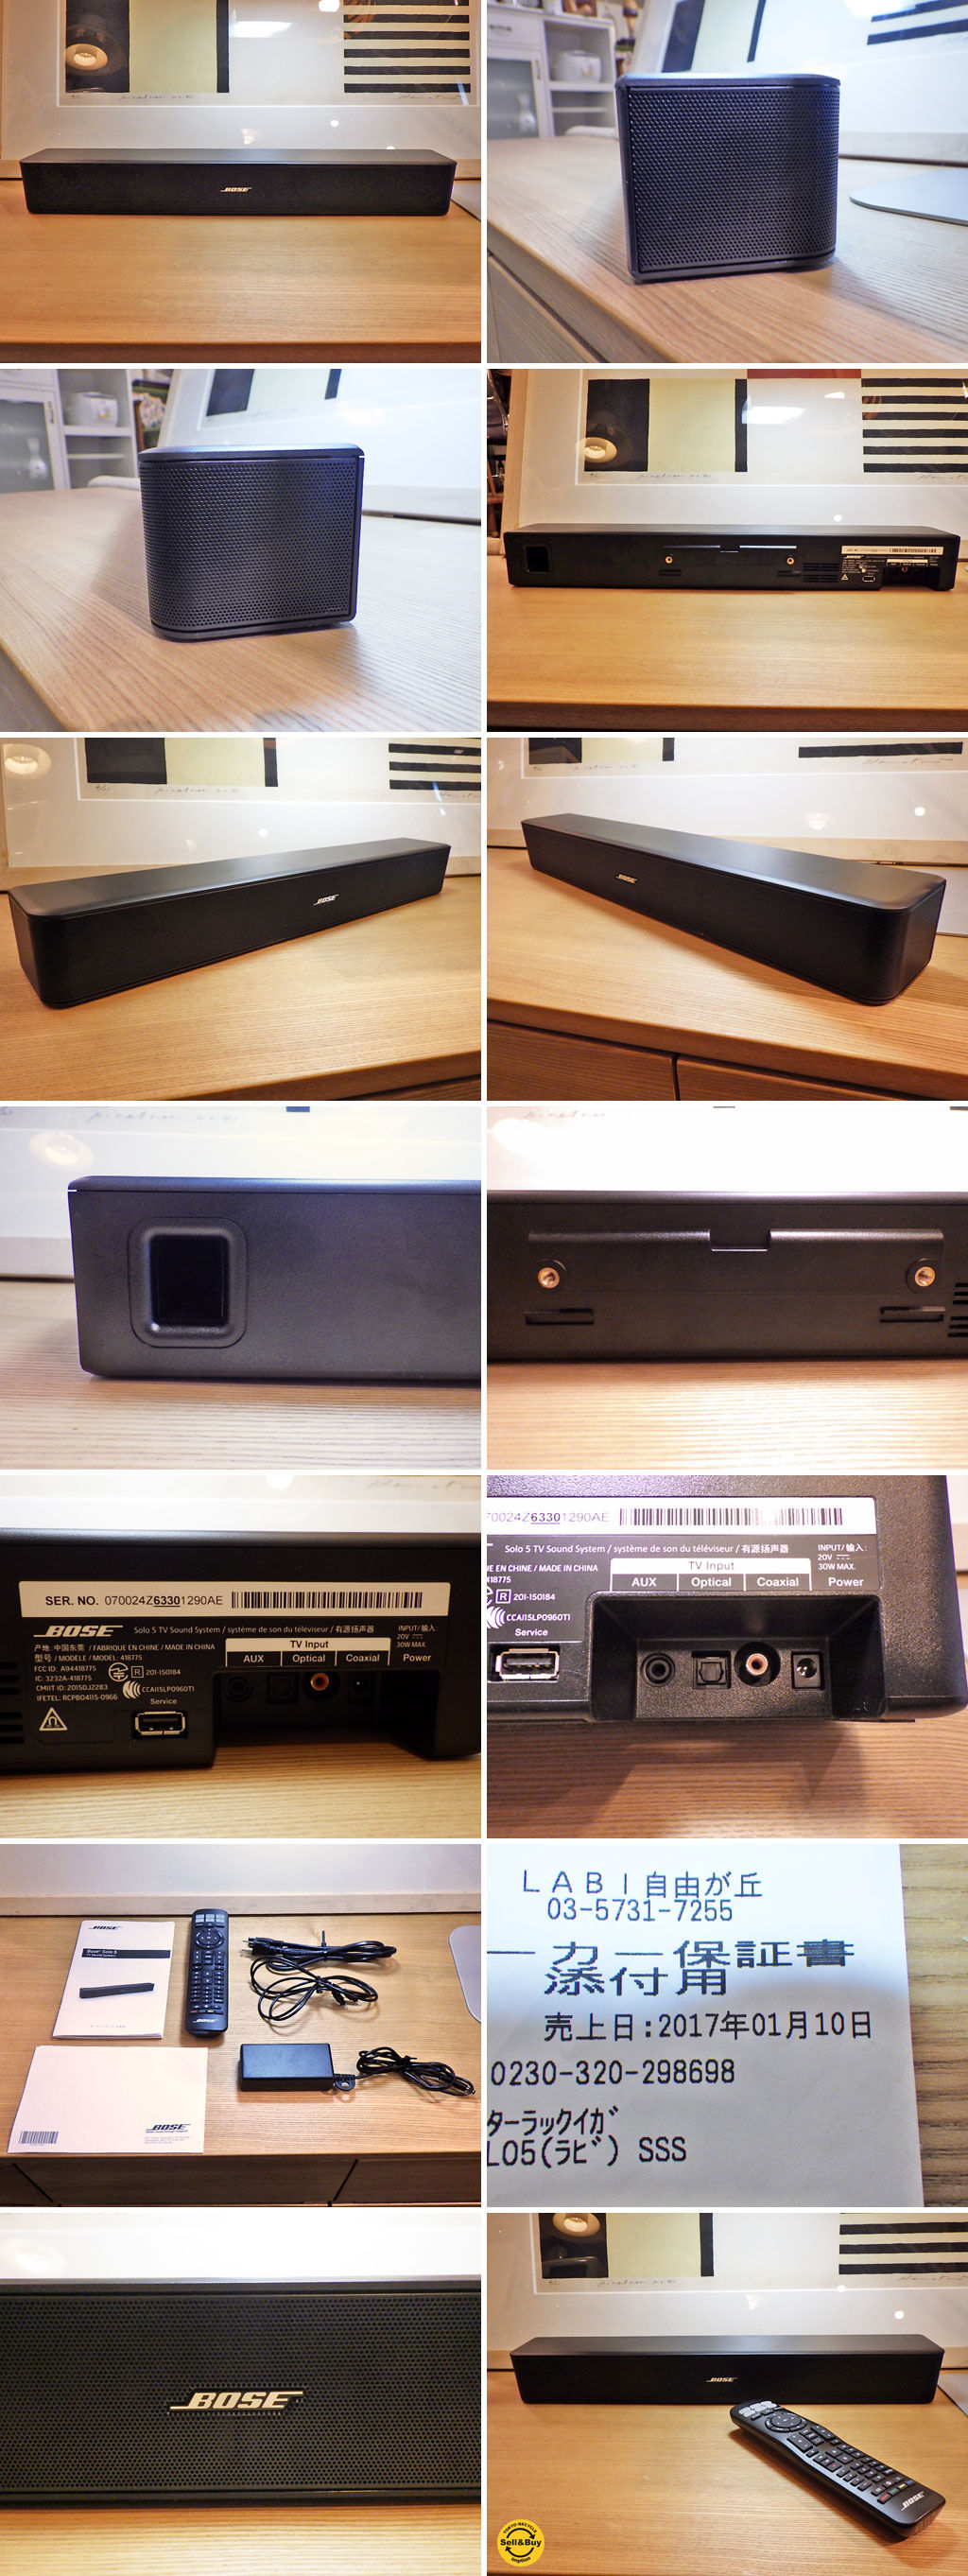 17年1月購入 保証約1年付 Bose ボーズ Solo 5 TV sound system ...